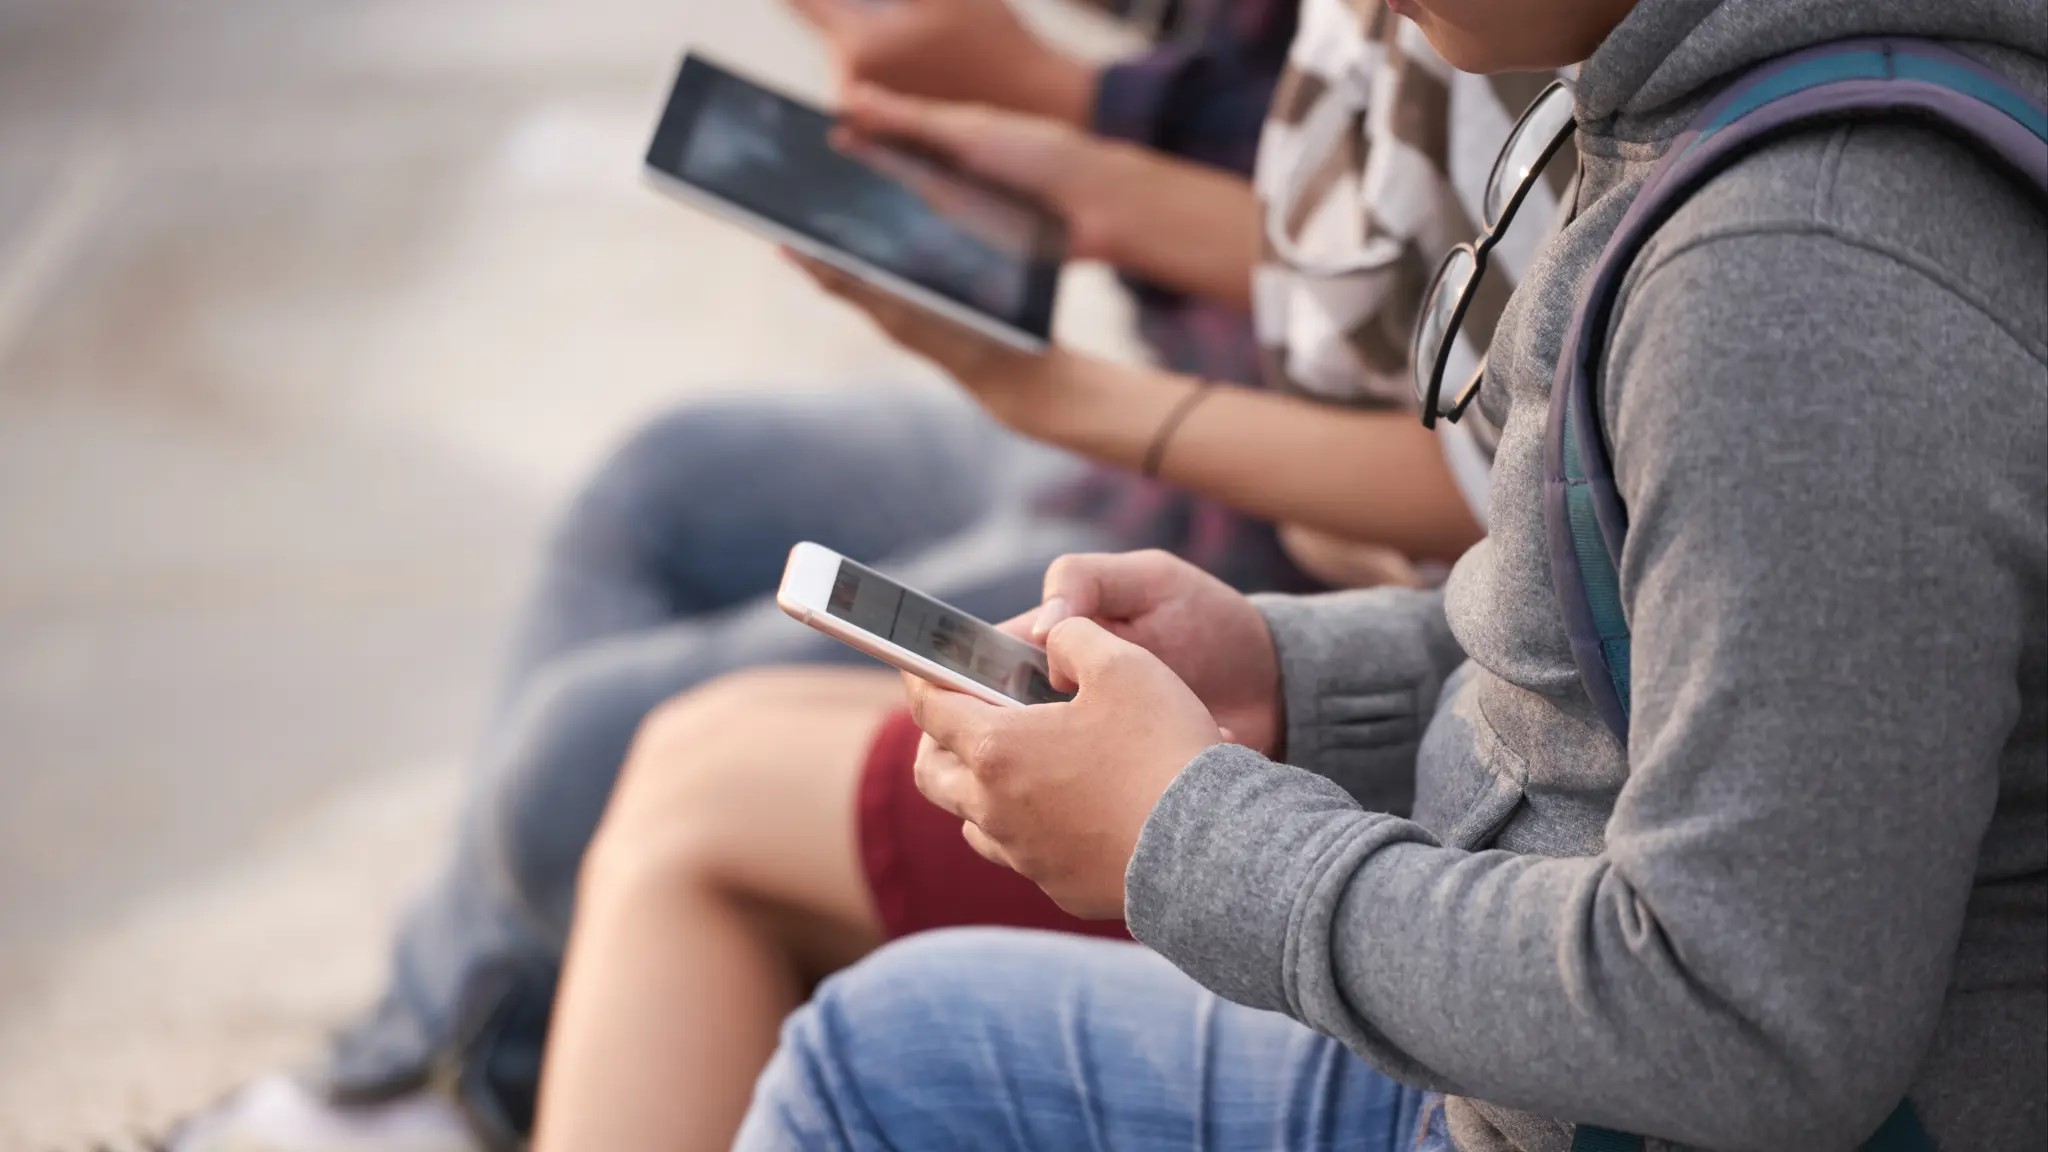 Apuestas on line: la Provincia busca prevenir los riesgos en adolescentes